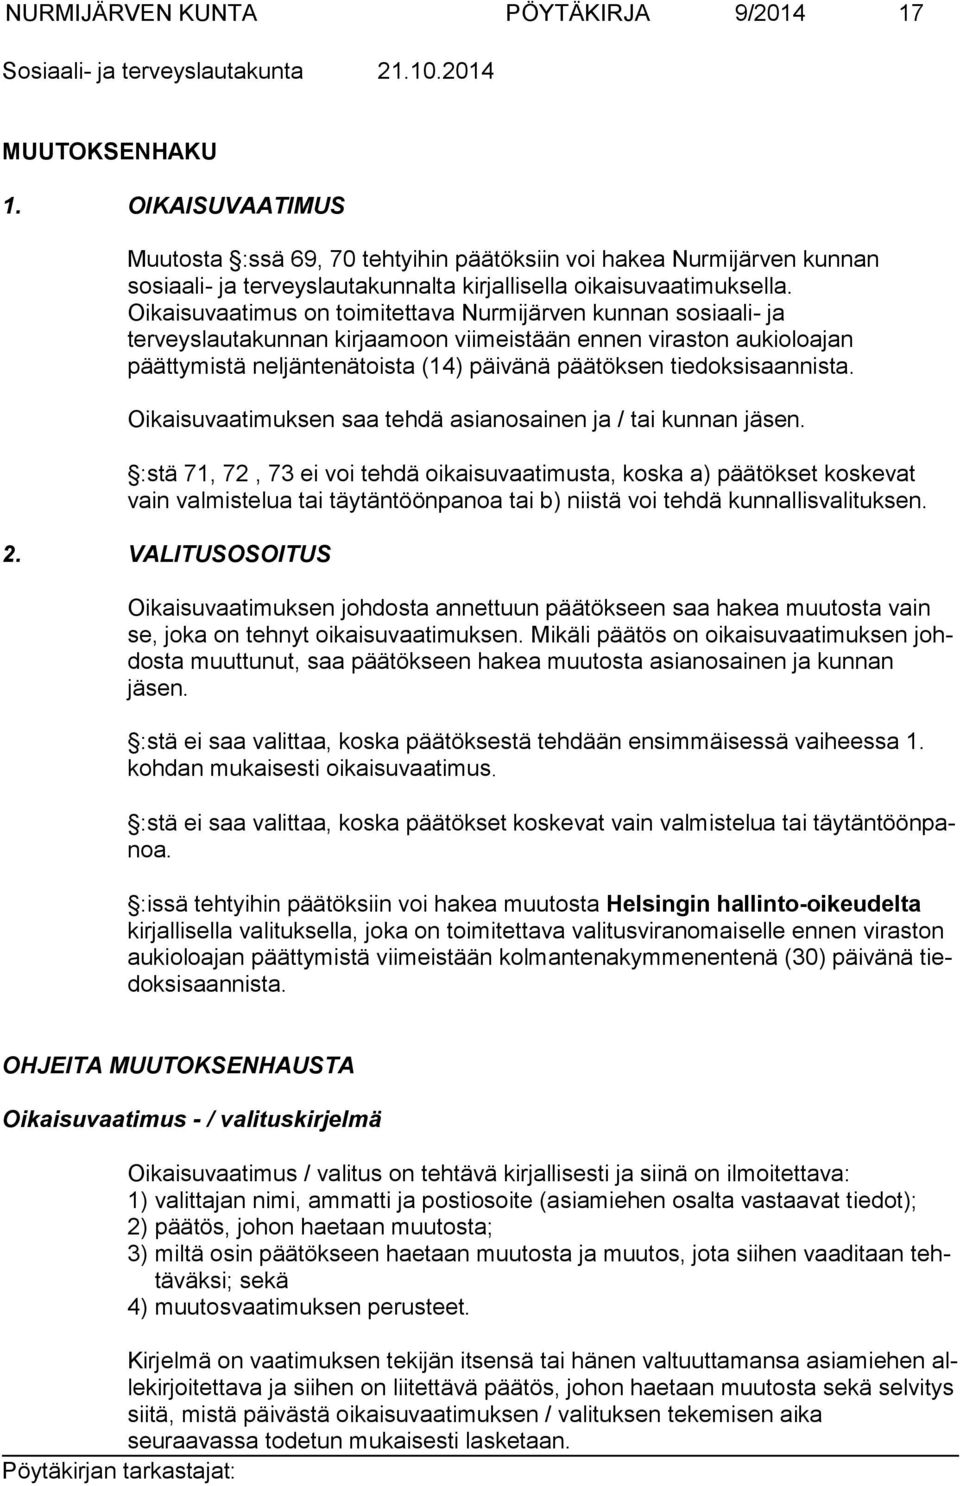 Oikaisuvaatimus on toimi tettava Nurmijärven kunnan sosiaali- ja terveyslautakunnan kirjaamoon viimeis tään ennen viraston aukioloajan päättymistä neljäntenätoista (14) päivänä pää töksen